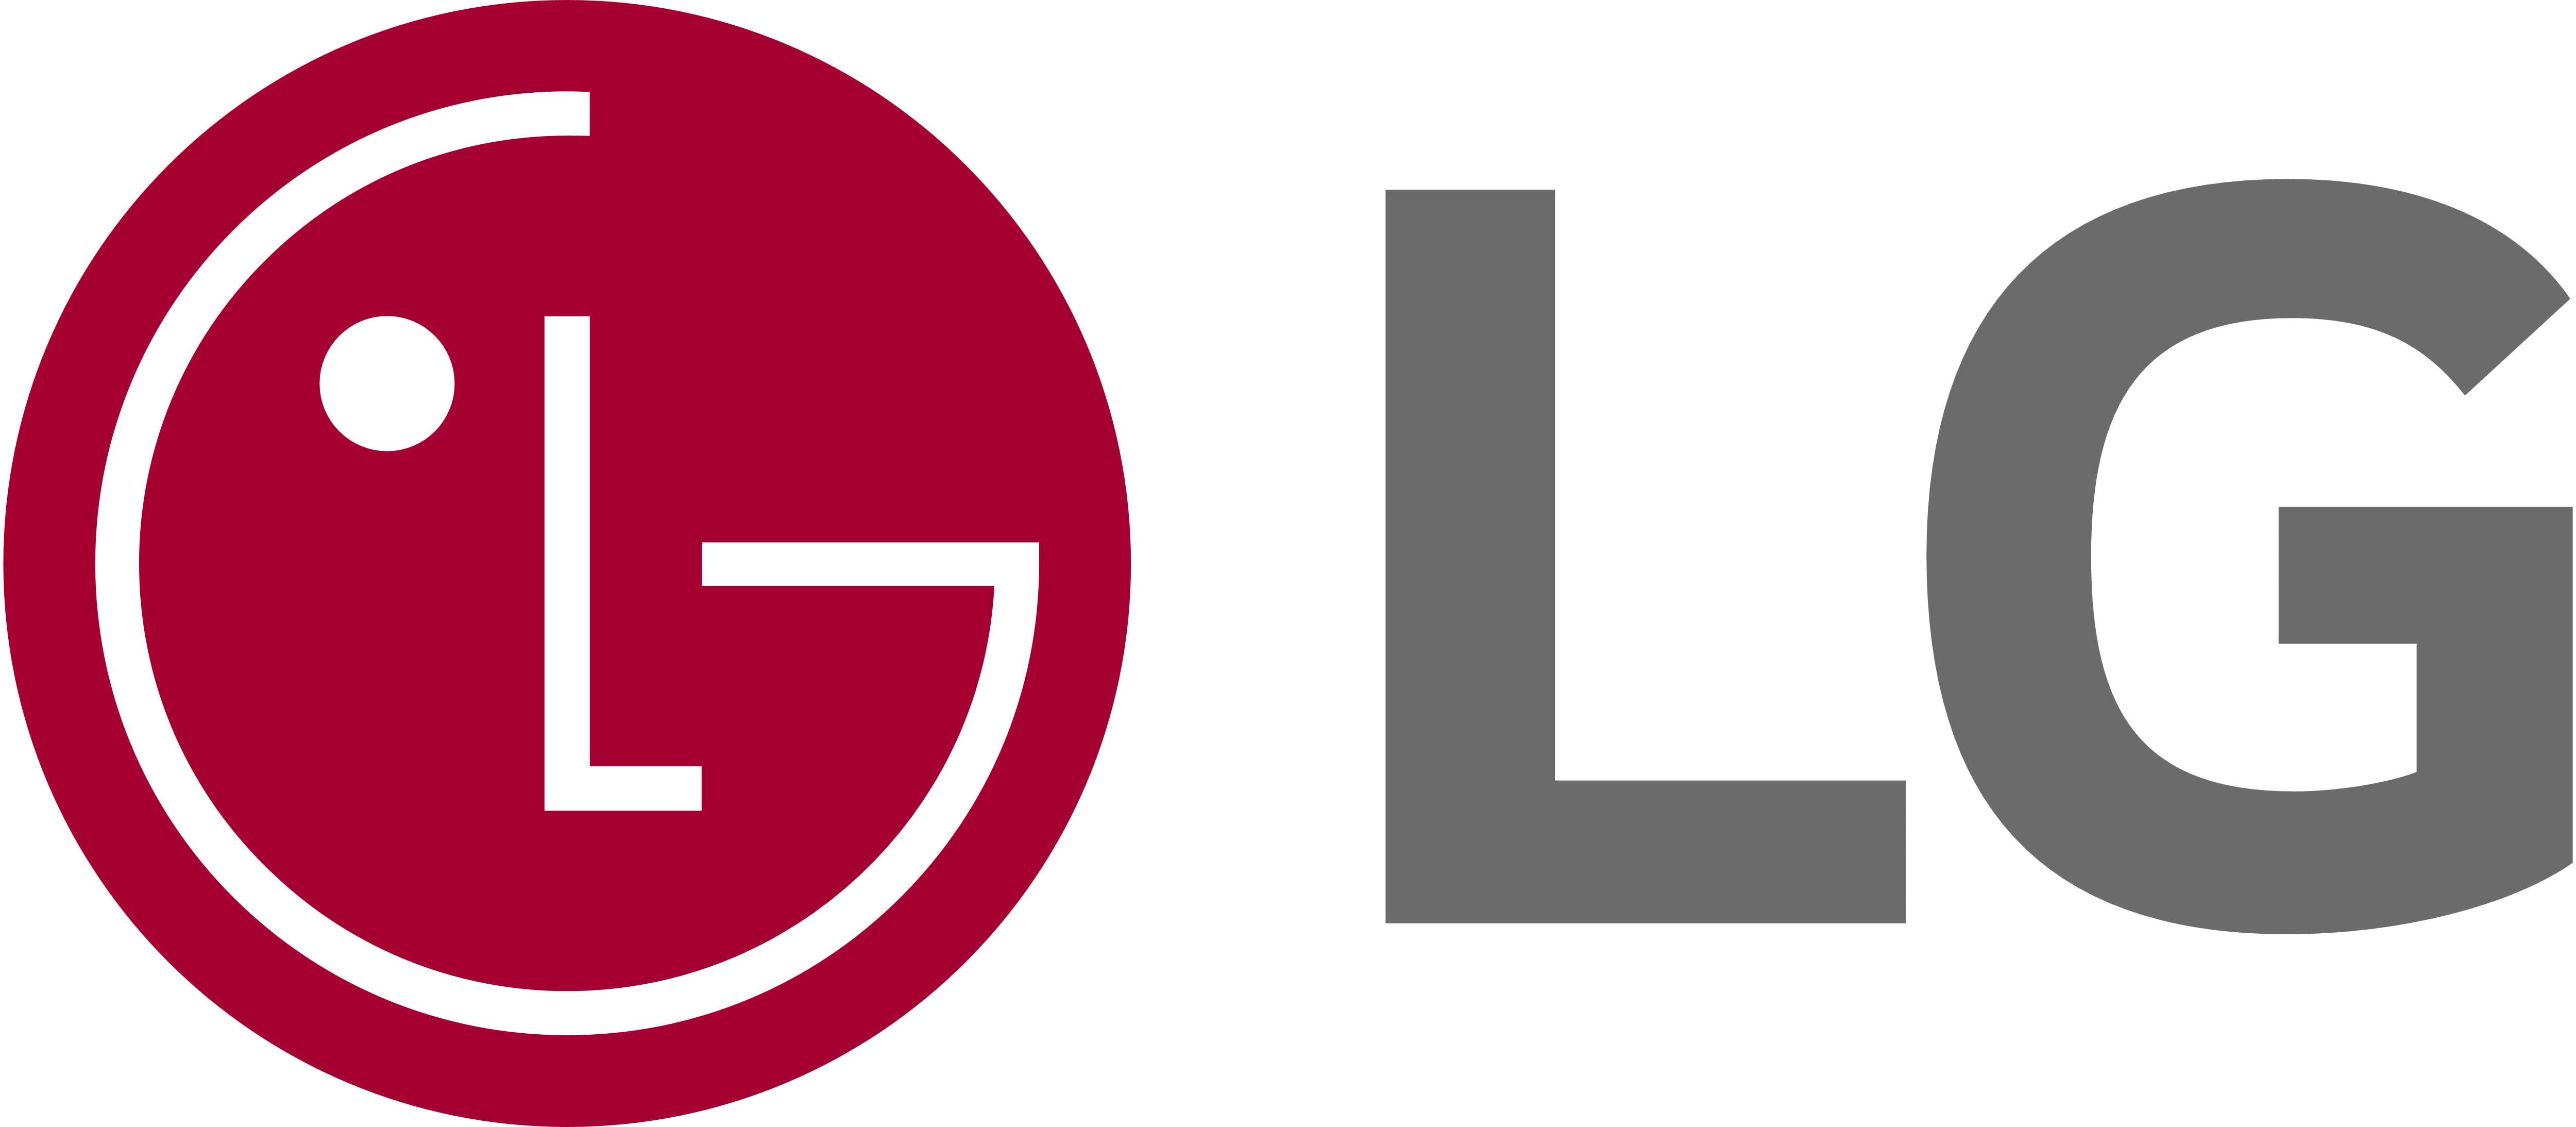 LG Stove Appliance Repair, Maytag Stove Repair